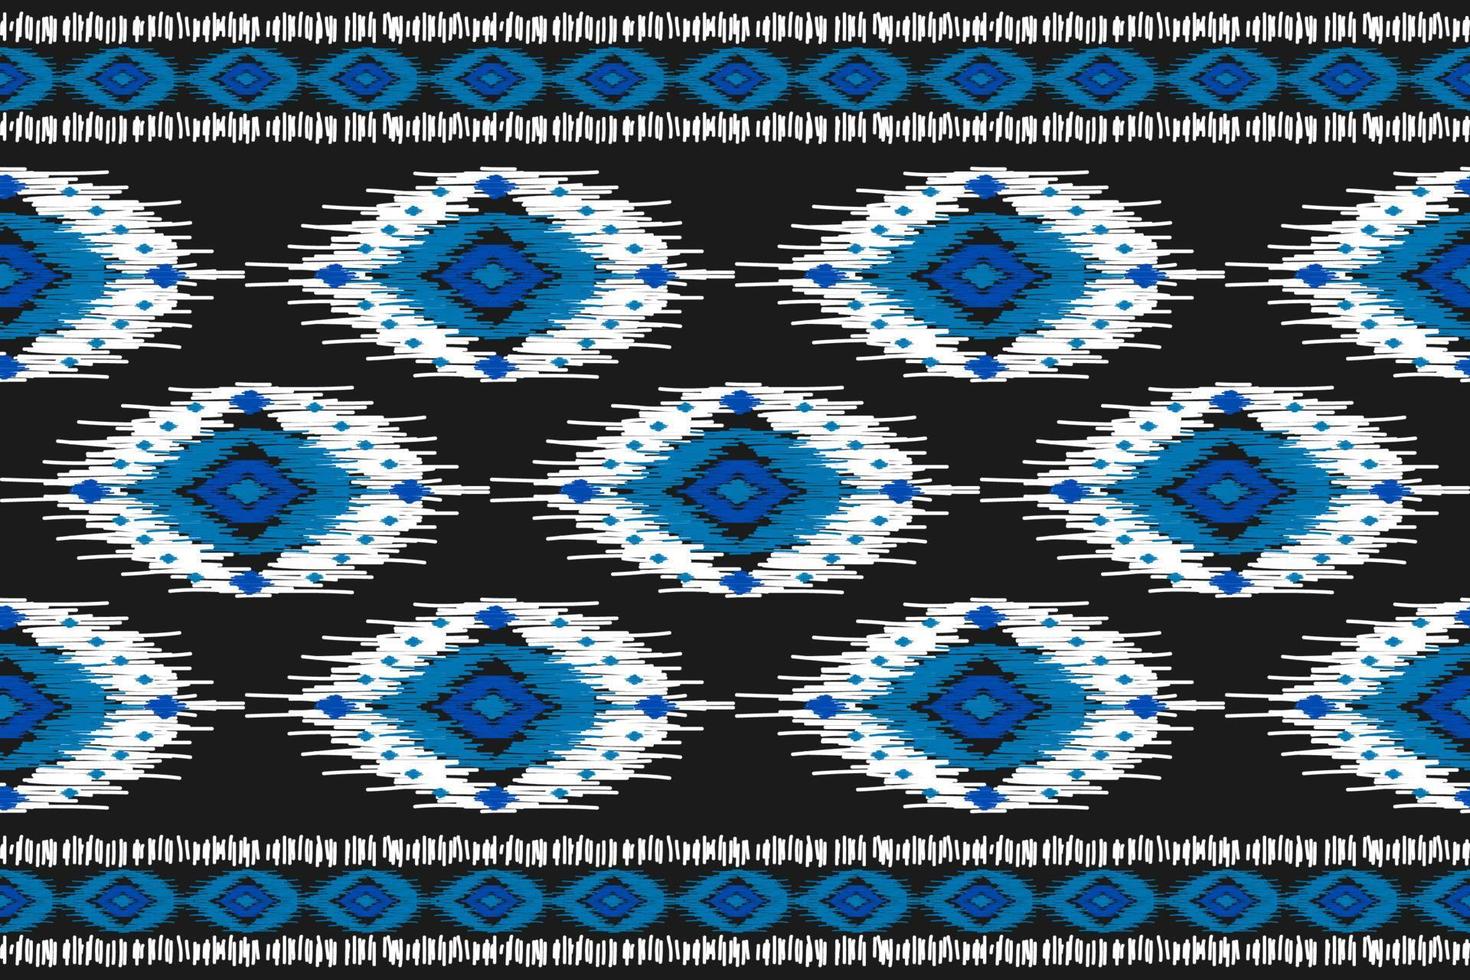 tapis ethnique motif ikat art. motif harmonieux d'ikat ethnique géométrique en tribal. façon mexicaine. vecteur